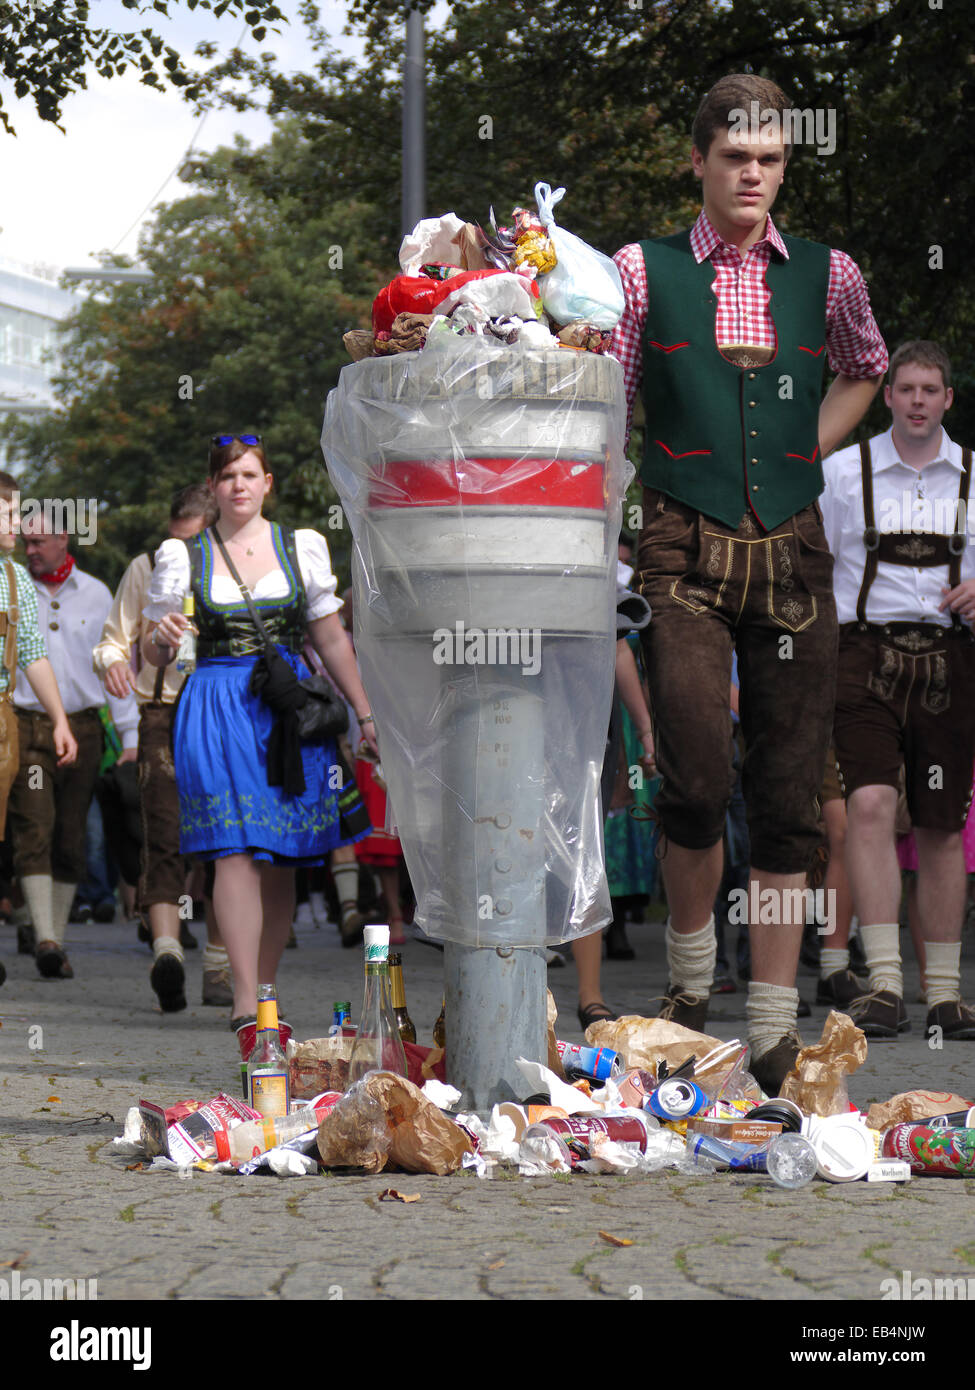 Germania affollata la folla a piedi per Monaco di Baviera - Festa della birra Oktoberfest Oktoberfest Foto Stock